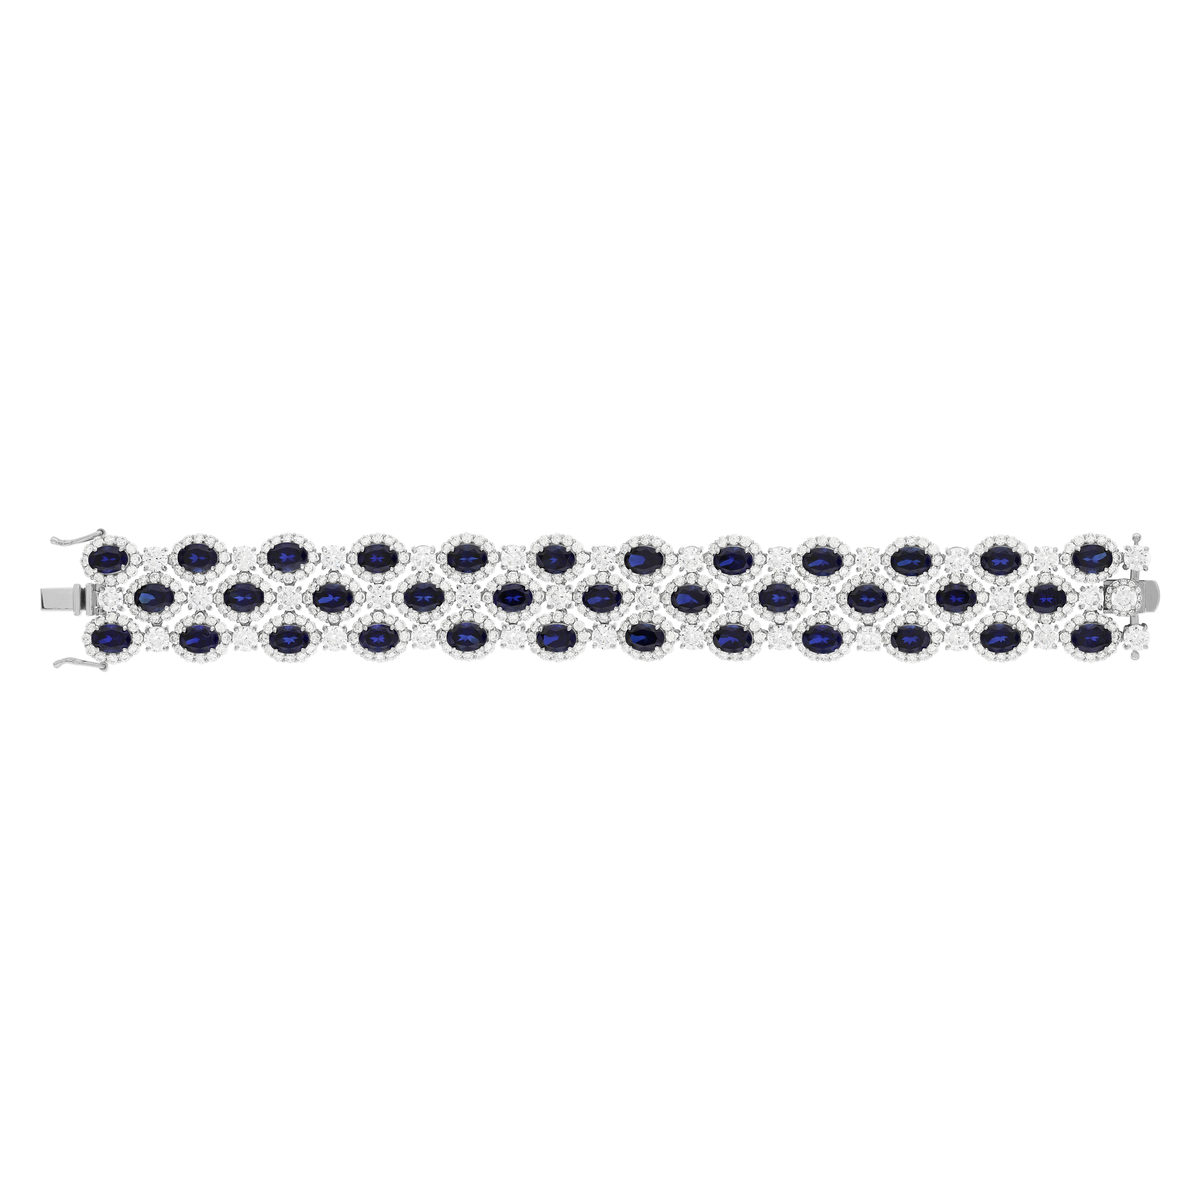 Bracelet argent 925, pierres synthétiques bleues zirconias 18.5 cm - vue 2